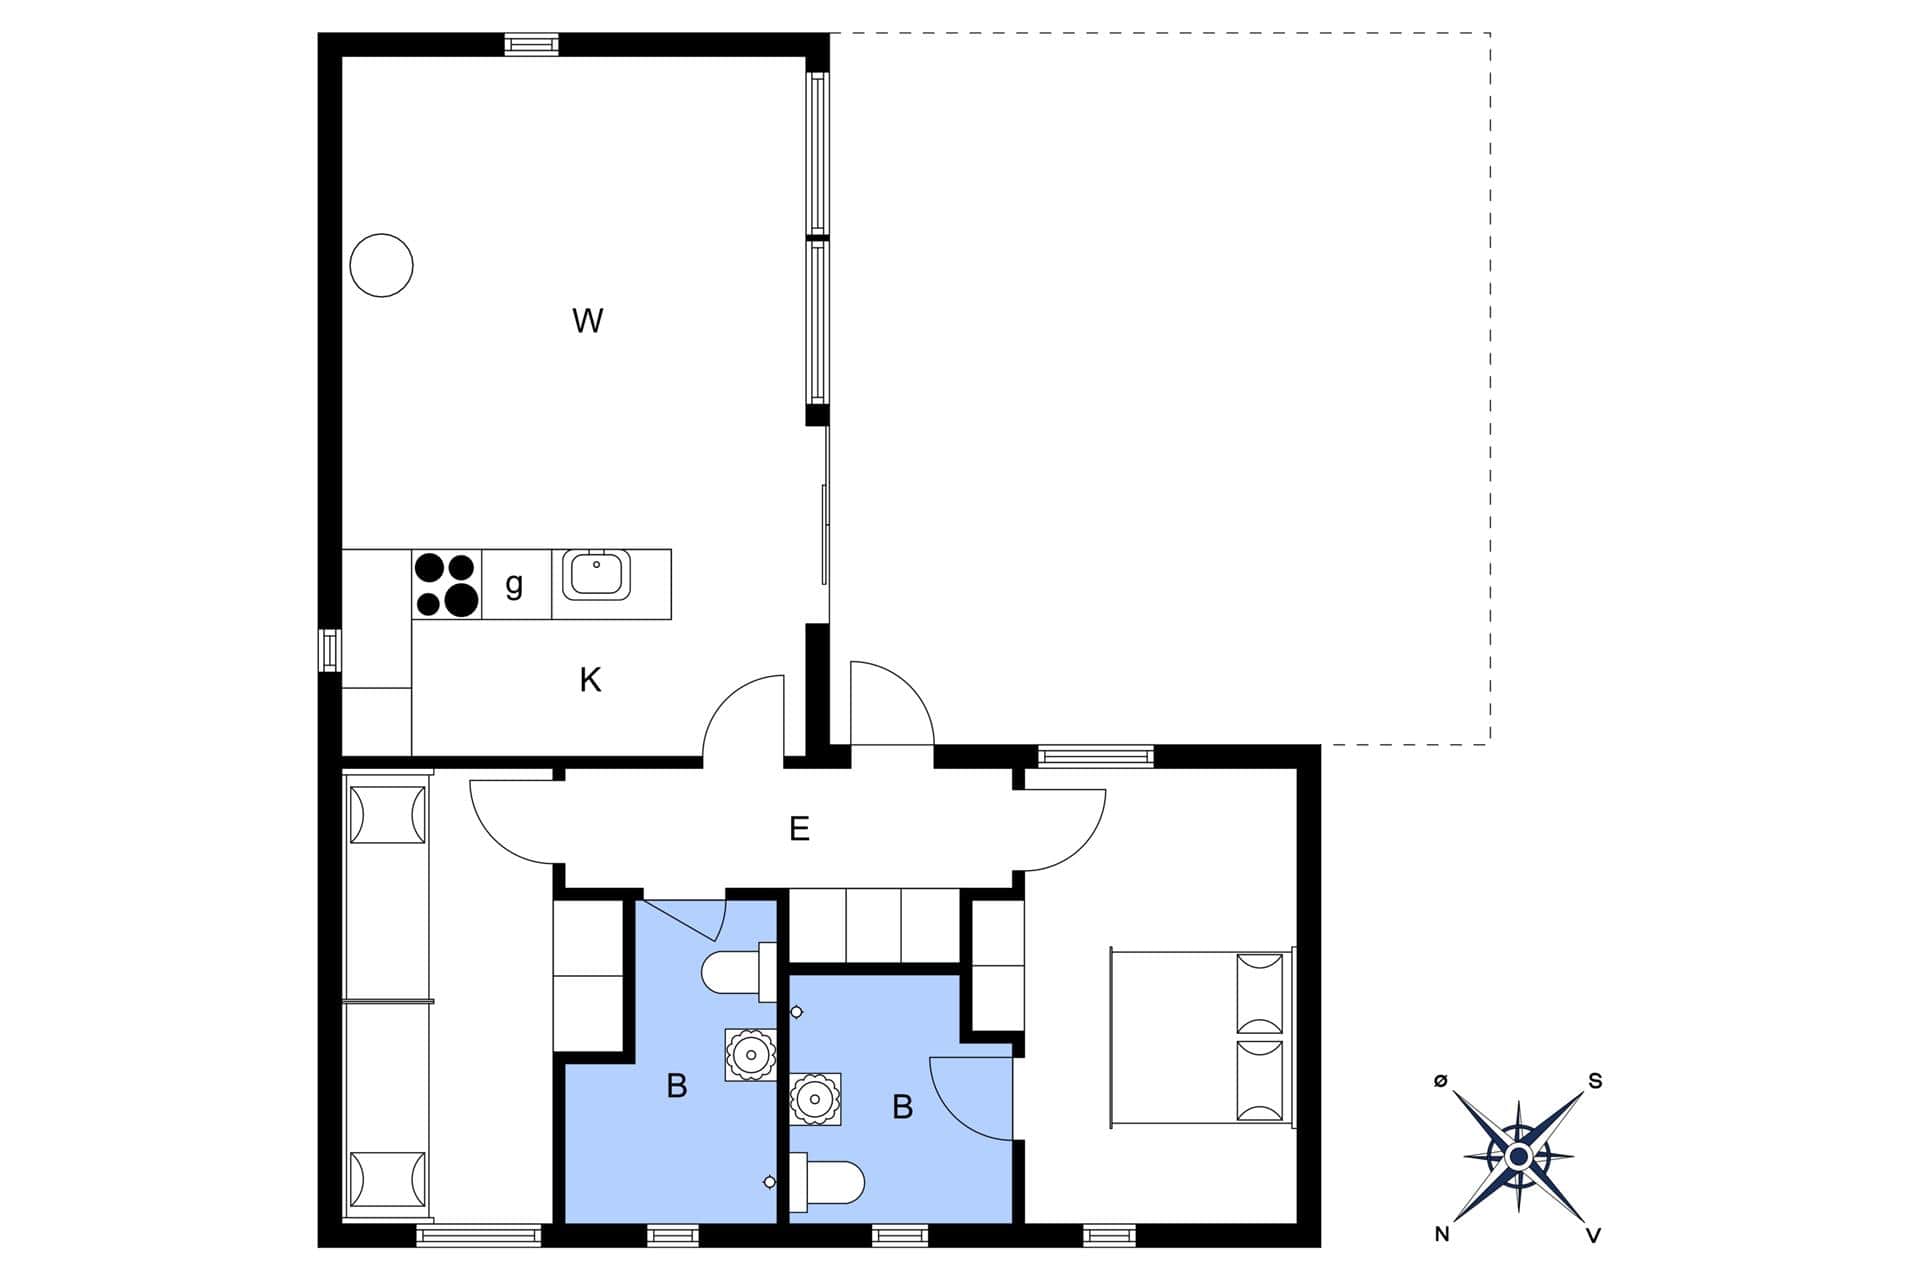 Interior 4-3 Holiday-home M642756, Oddevejen 8, DK - 5500 Middelfart